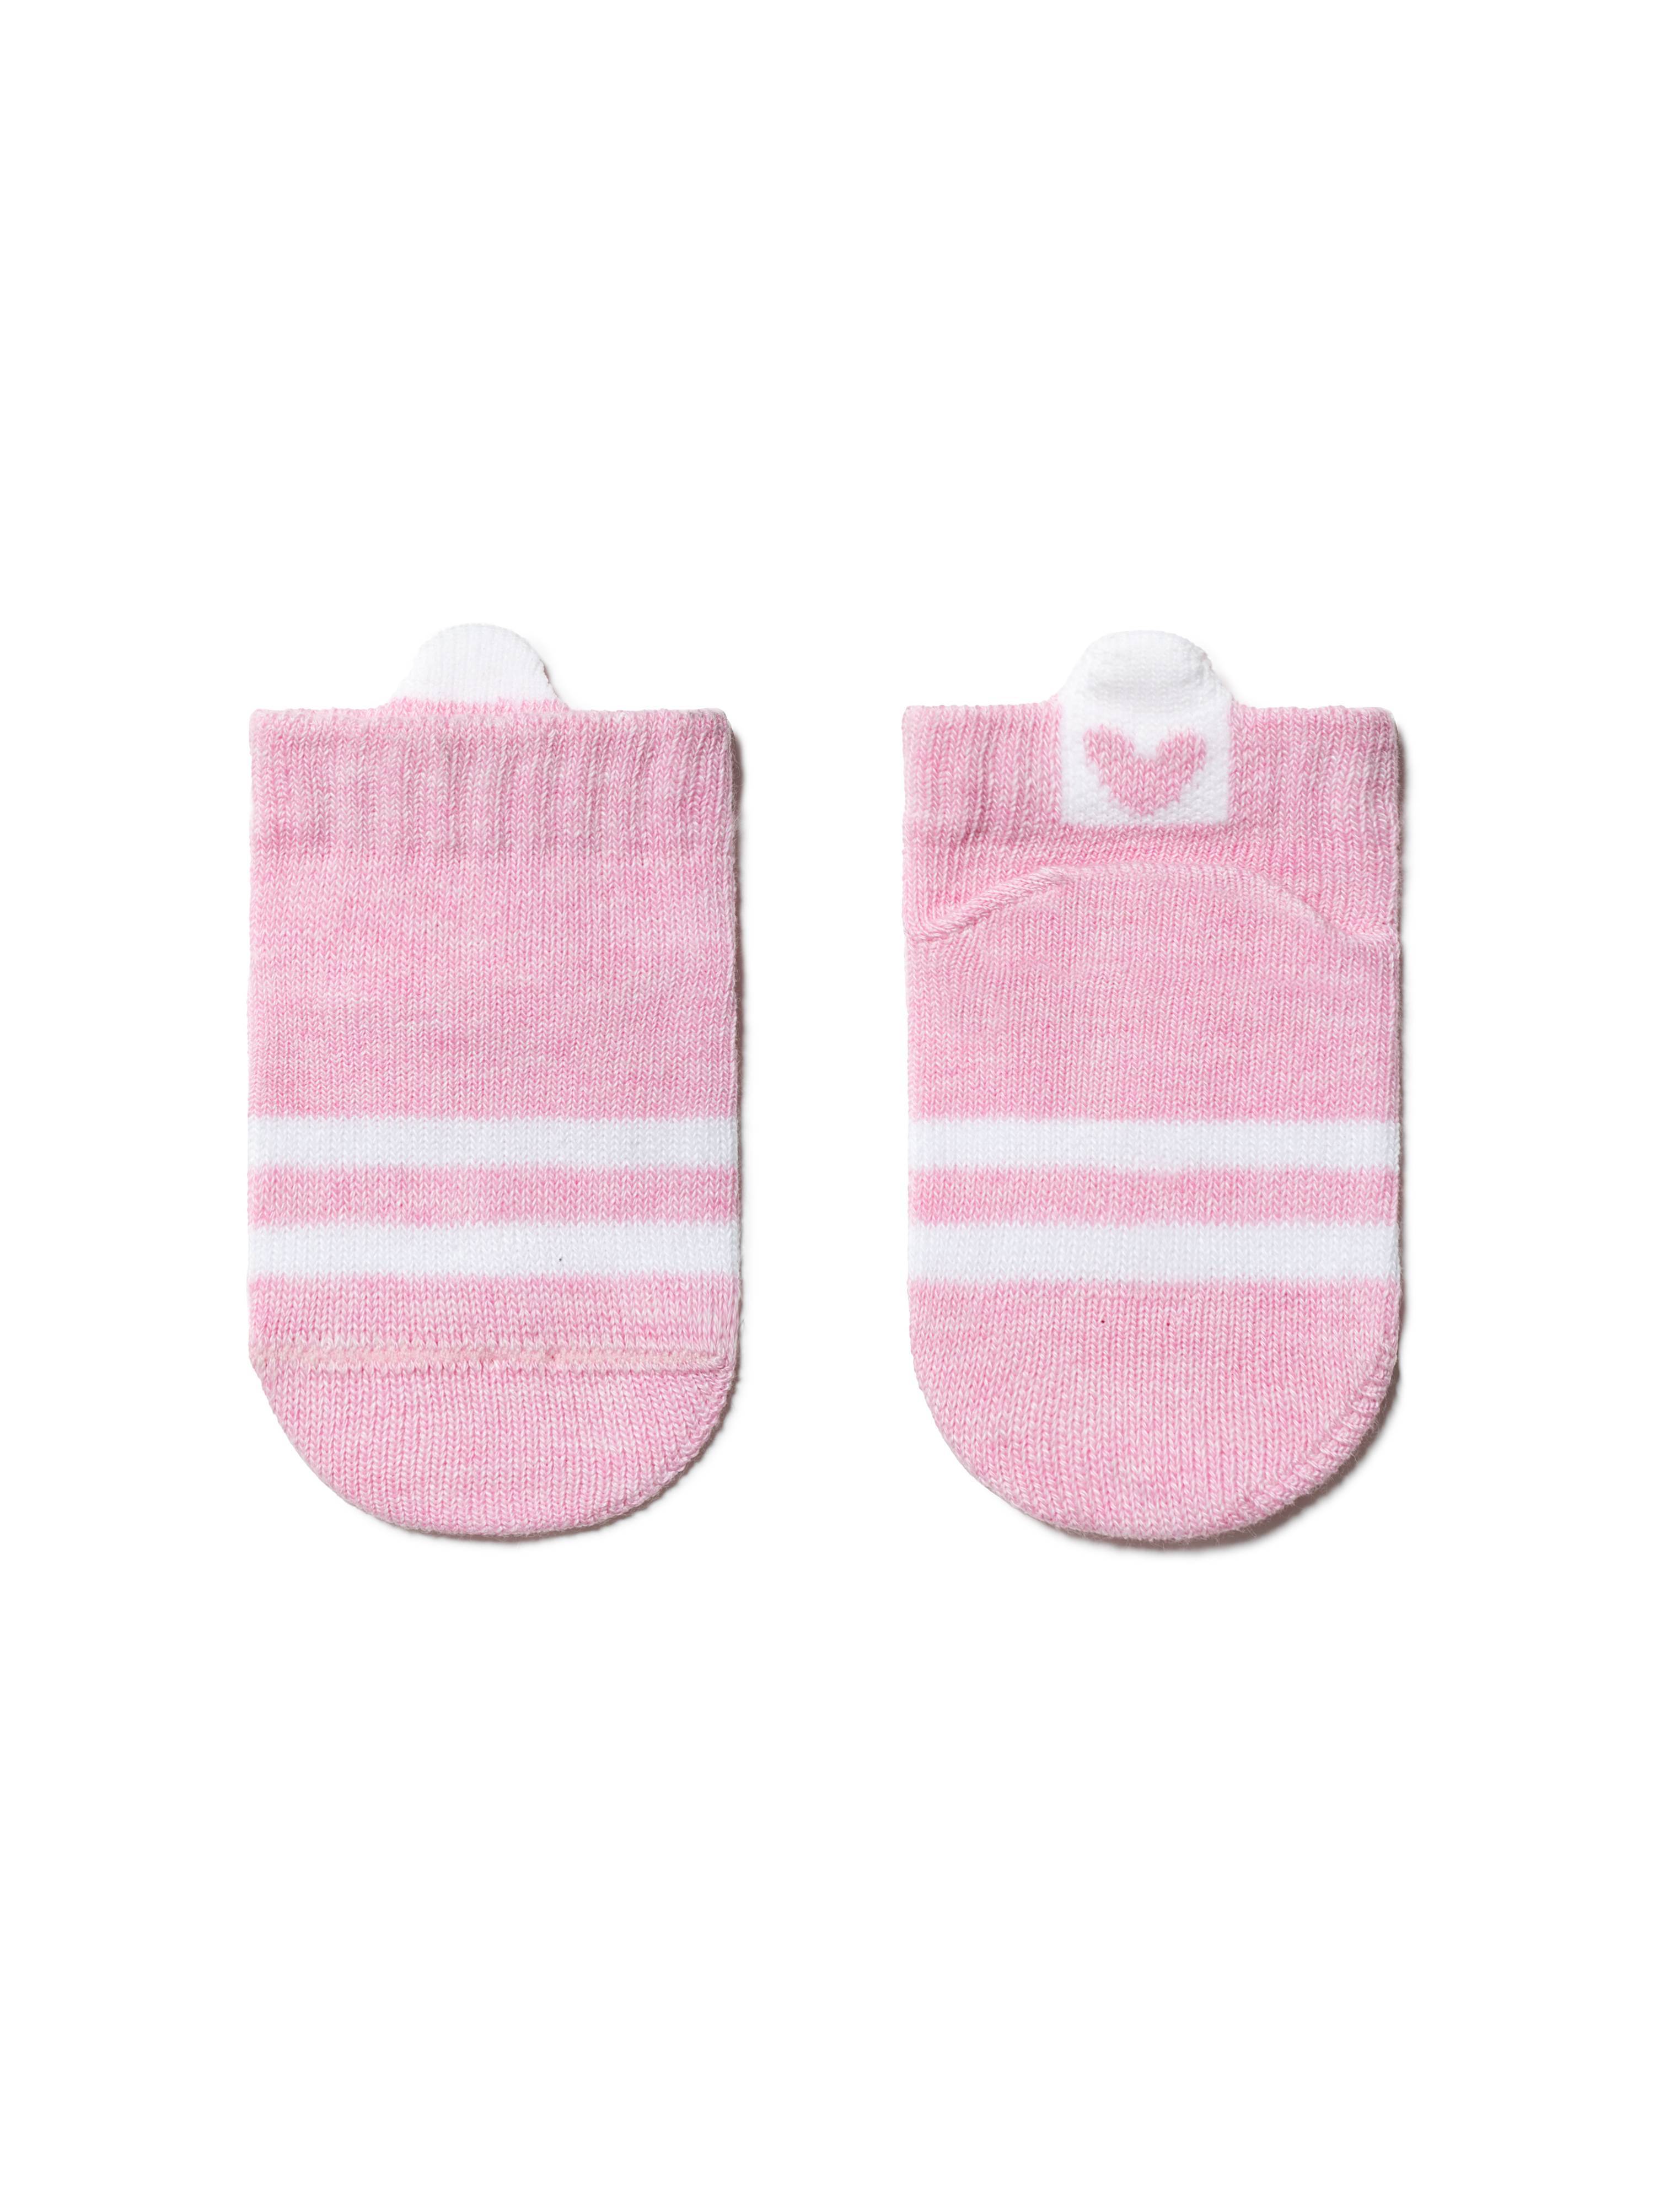 Хлопковые носки TIP-TOP с пикотом-«язычком» для самых маленьких, модель 512 Conte ⭐️, цвет светло-розовый, размер 10